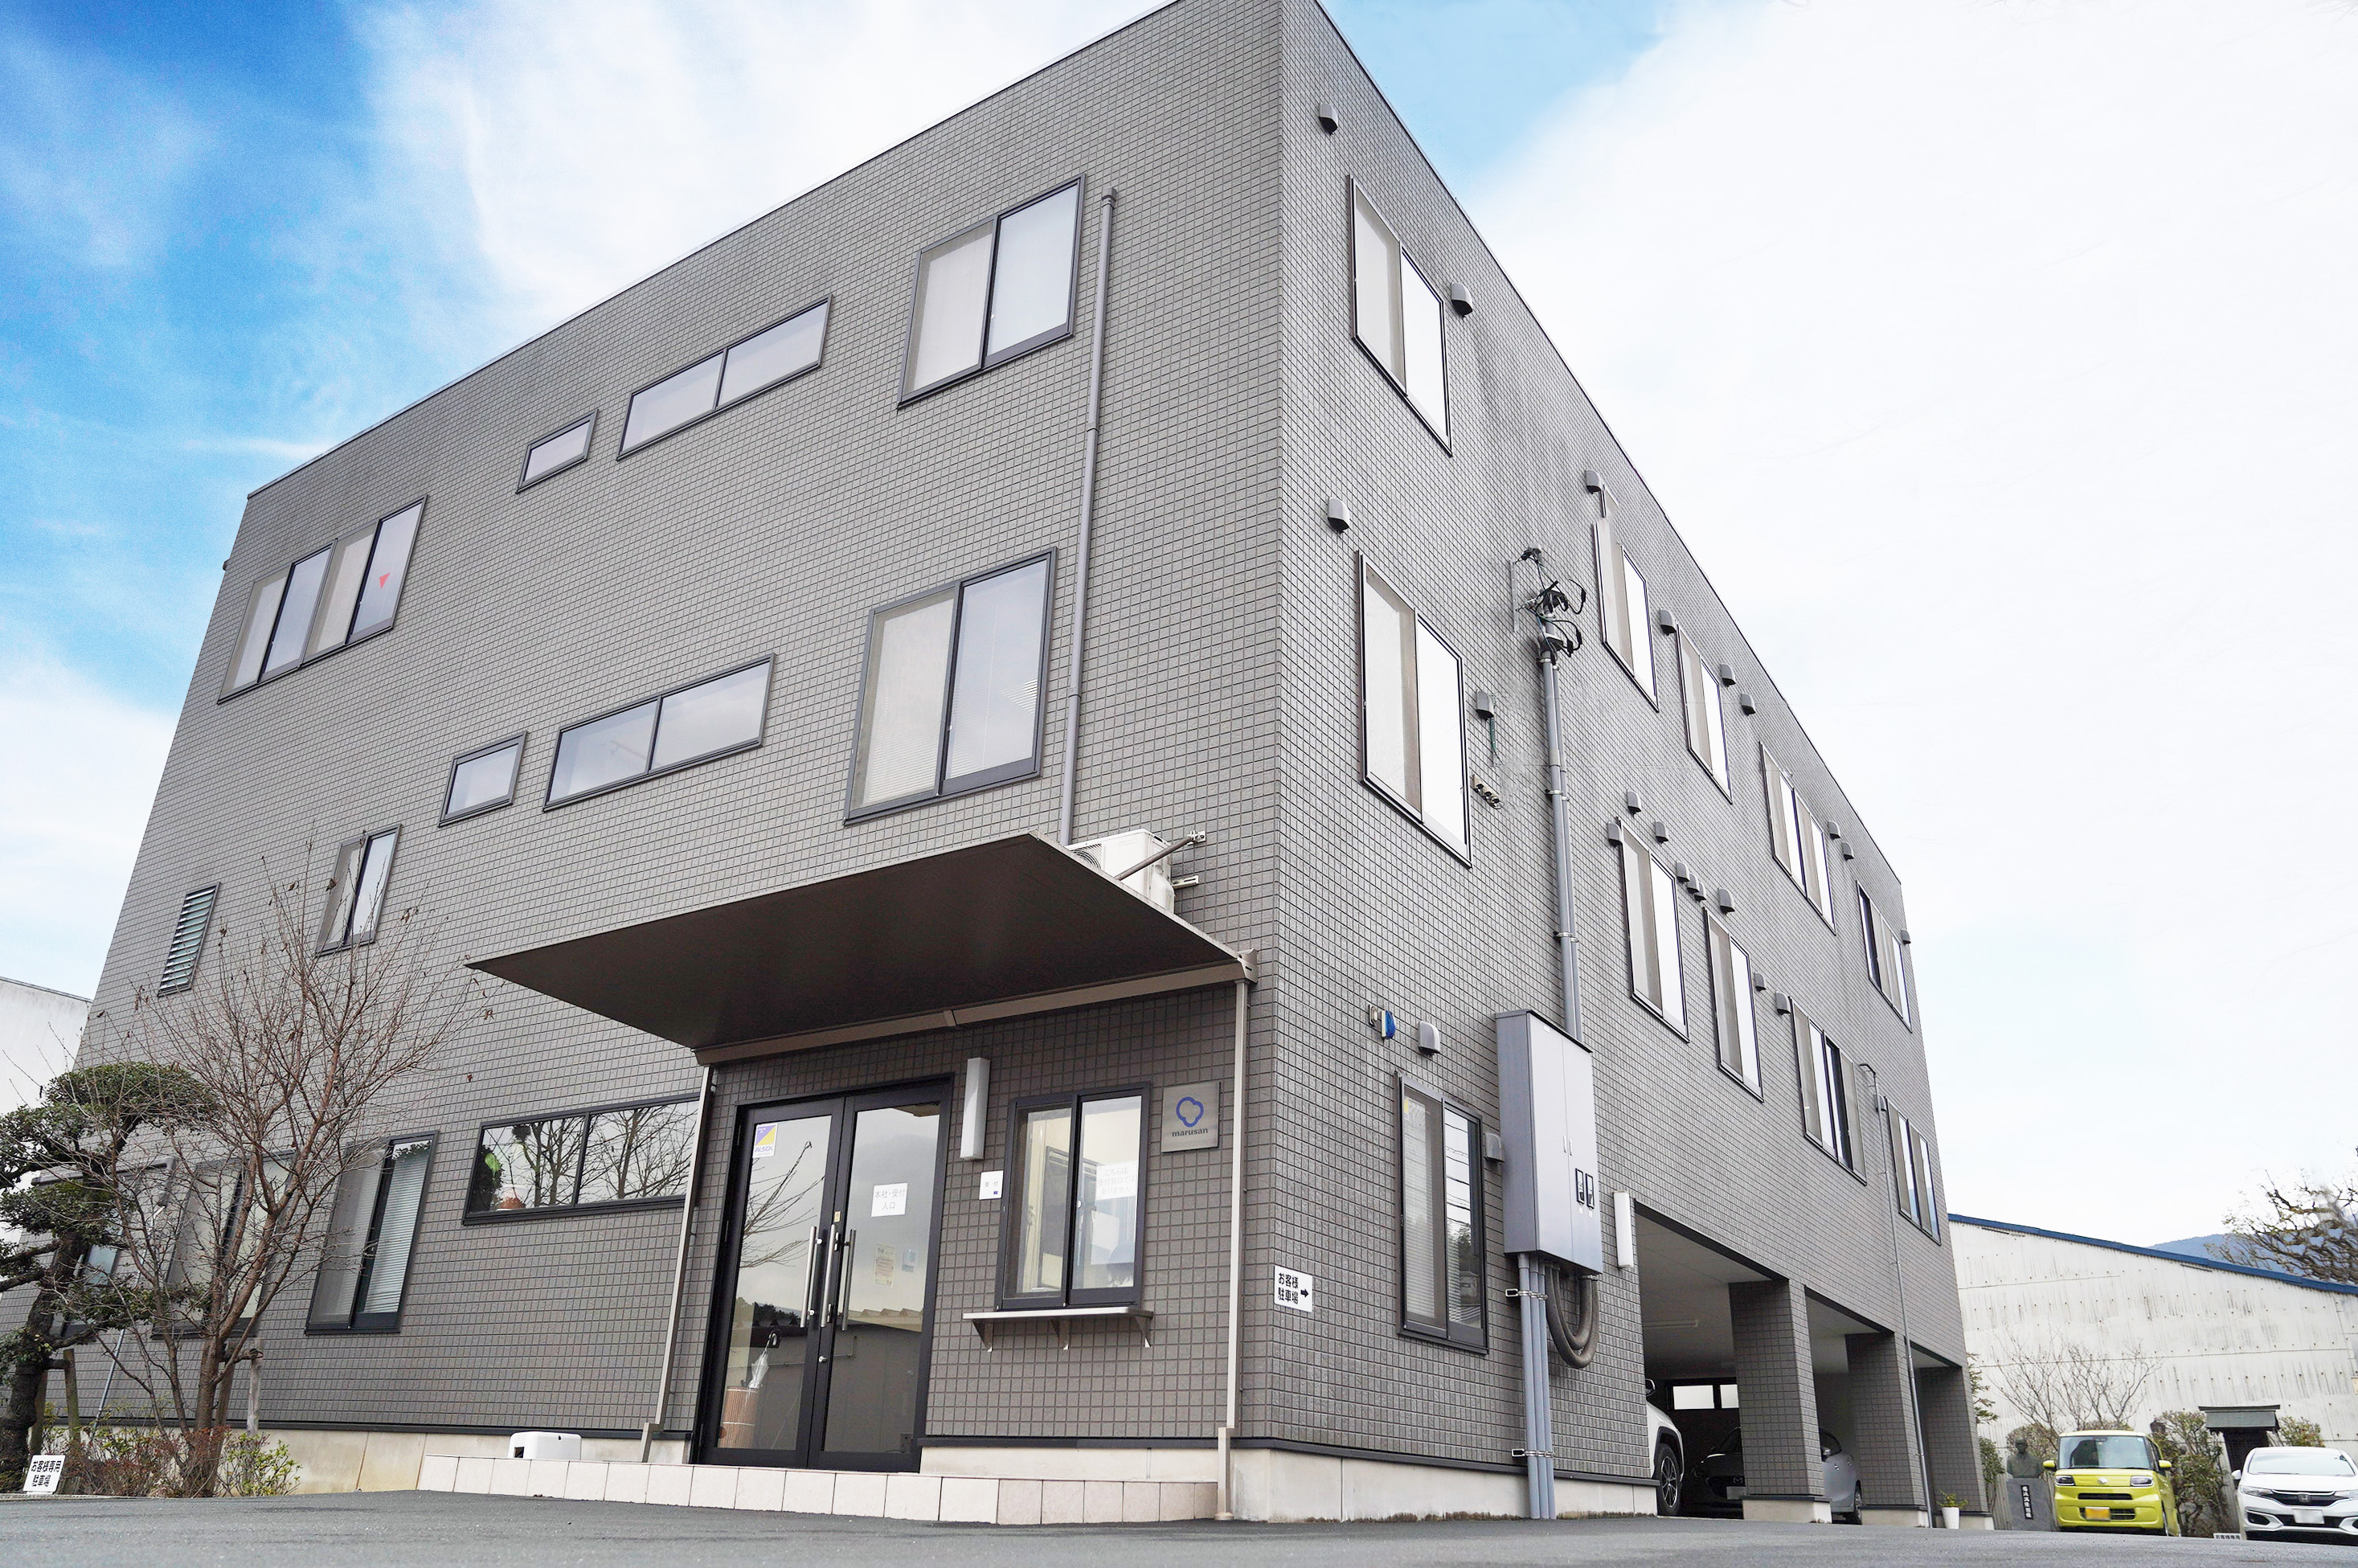 愛媛県大洲市で、国内有数のコットン製造を行う丸三産業株式会社の本社。